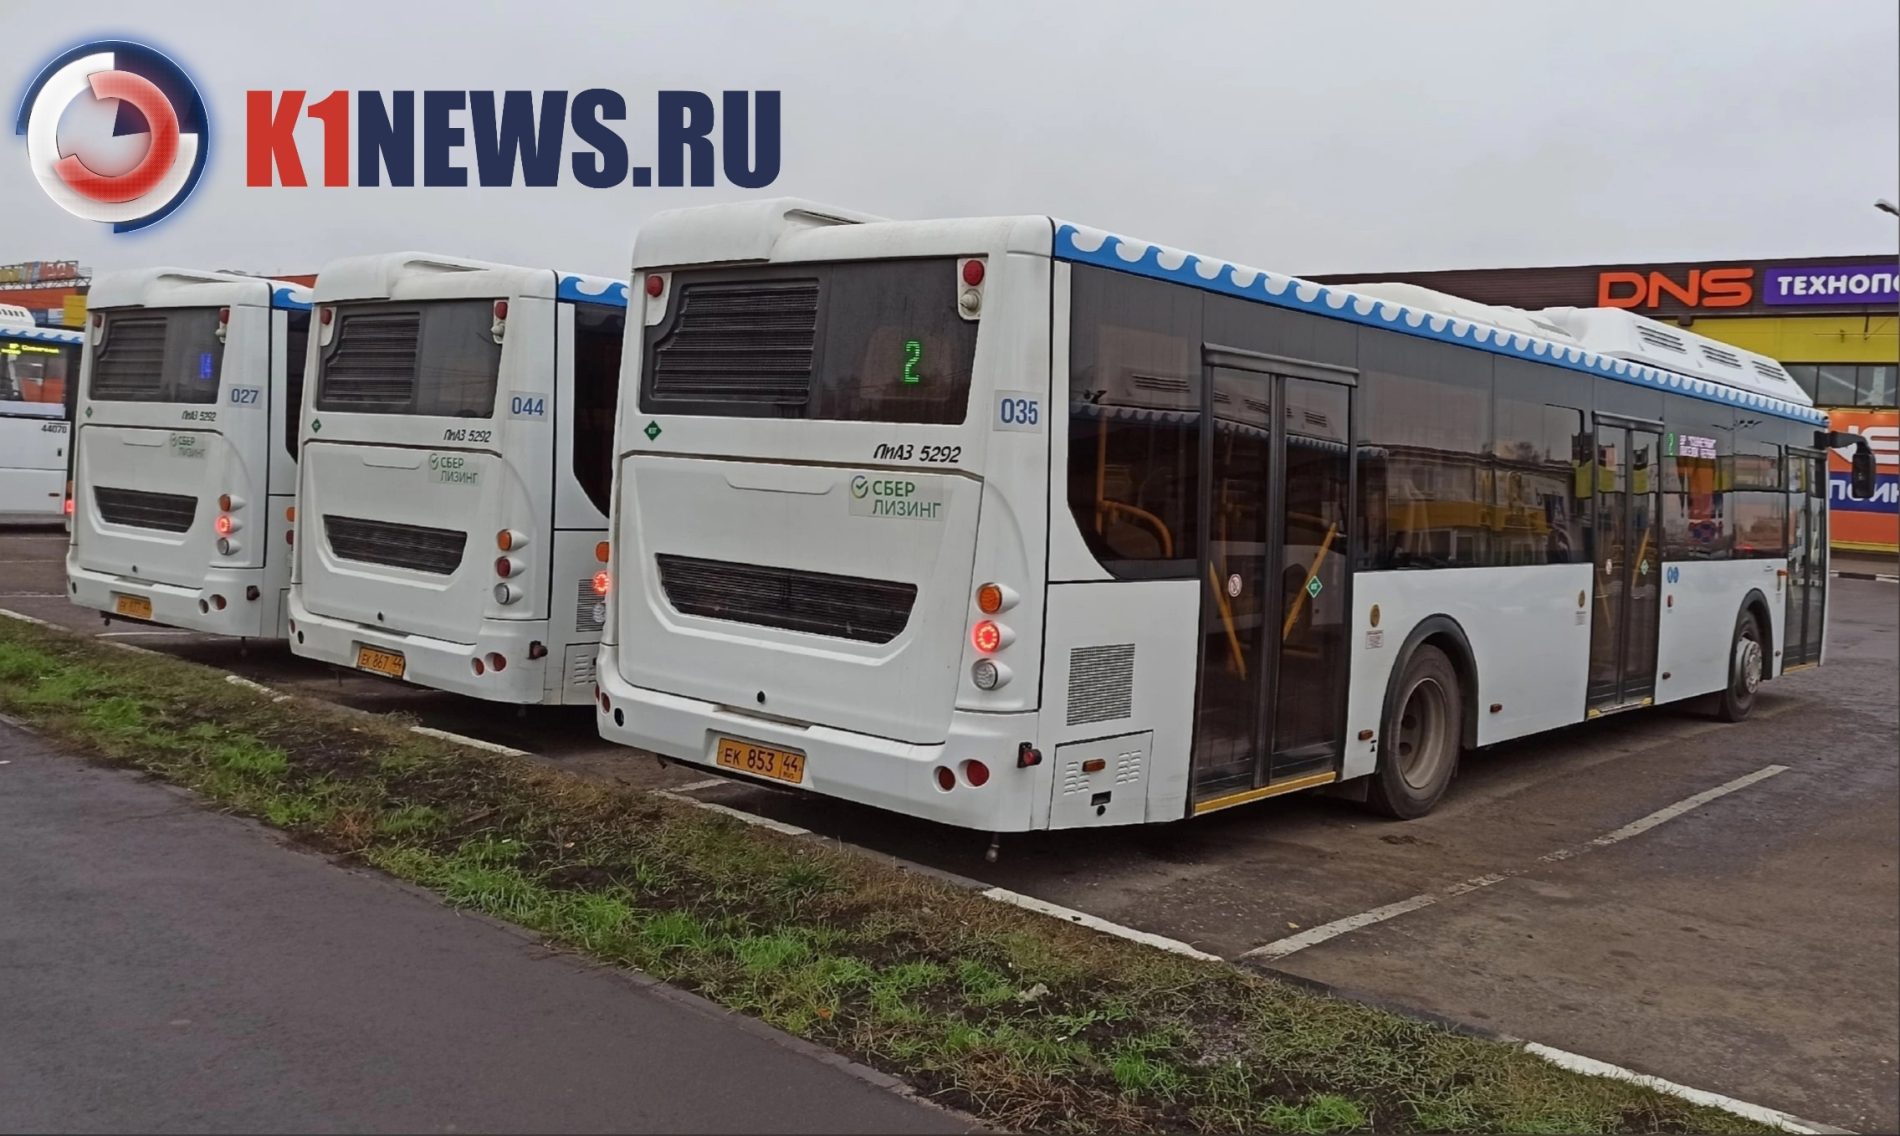 7-ку вернули: в Костроме автобусы изменят направление